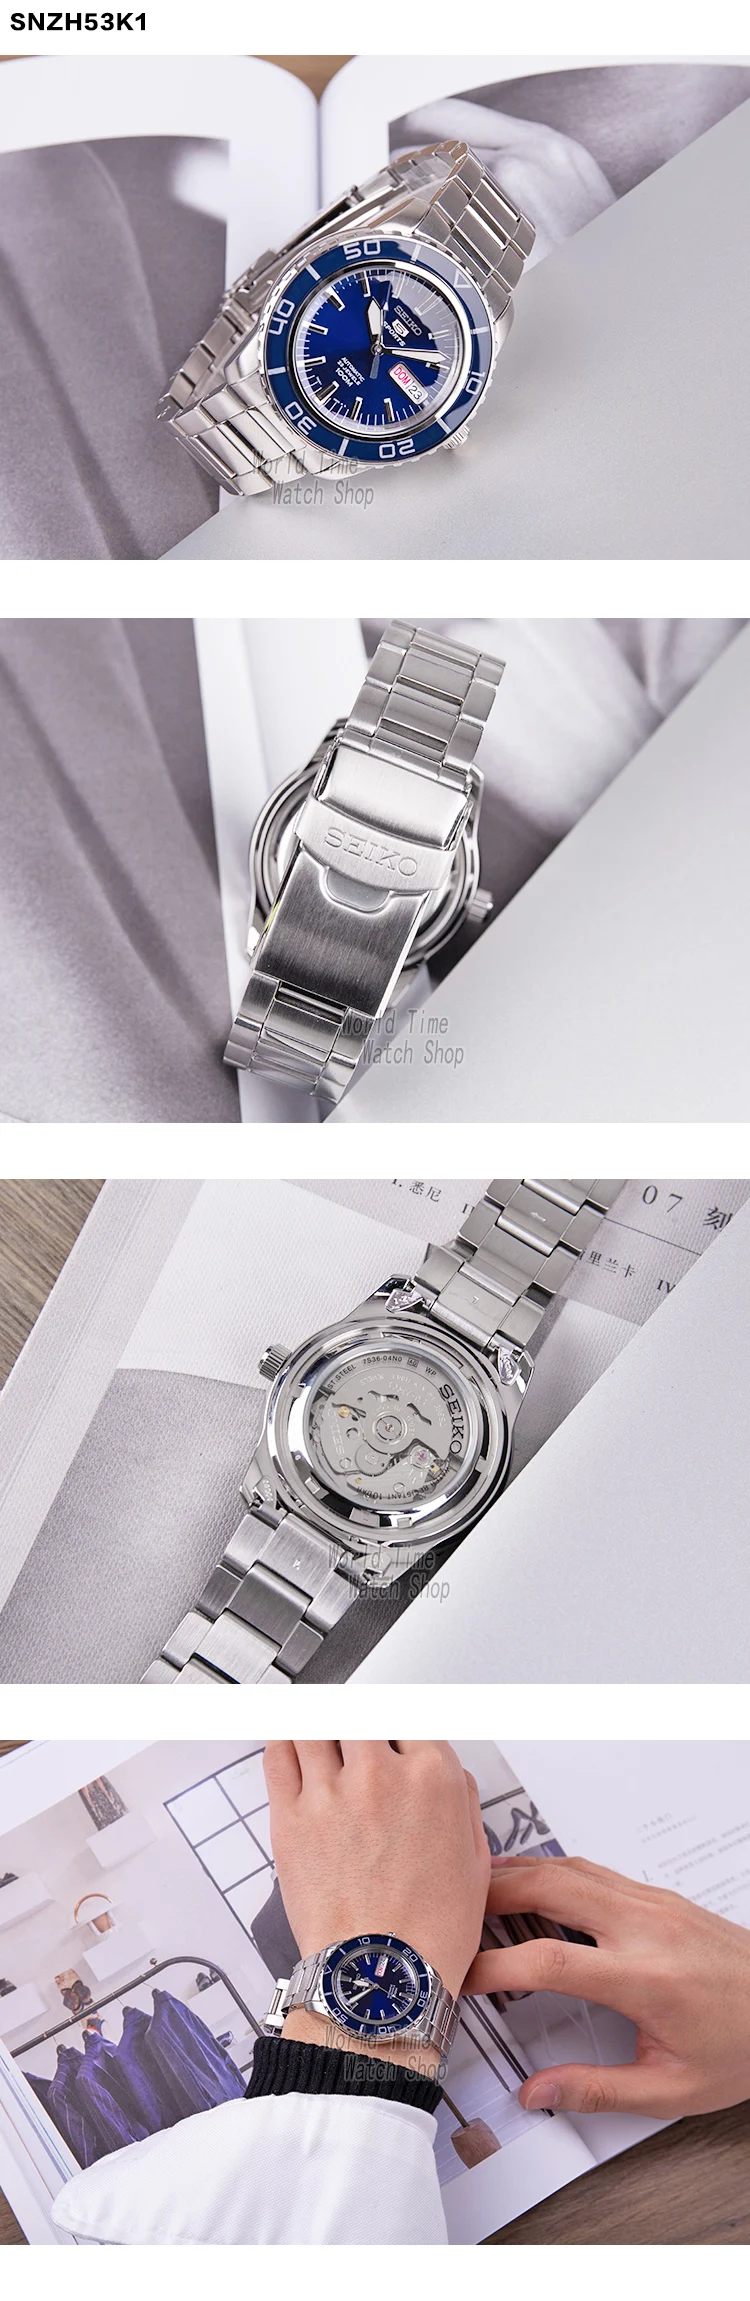 Seiko часы мужские 5 автоматические часы Топ бренд Роскошные спортивные мужские часы набор водонепроницаемые механические Военные часы relogio masculinoSNZ